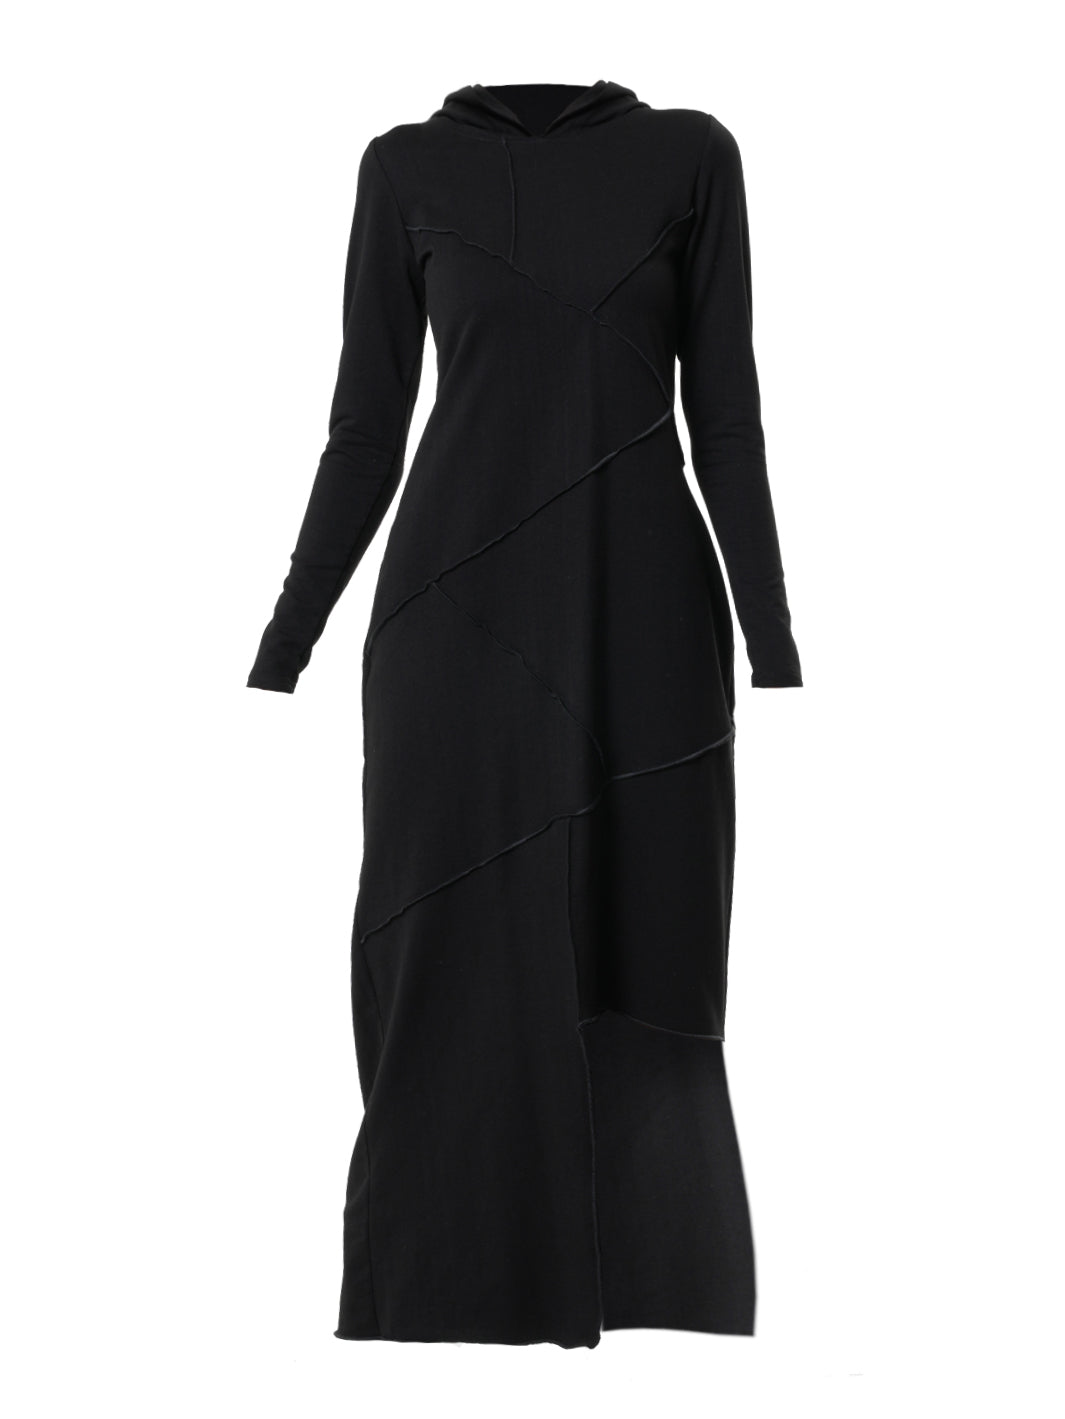 Asimetrična haljina s kapuljačom